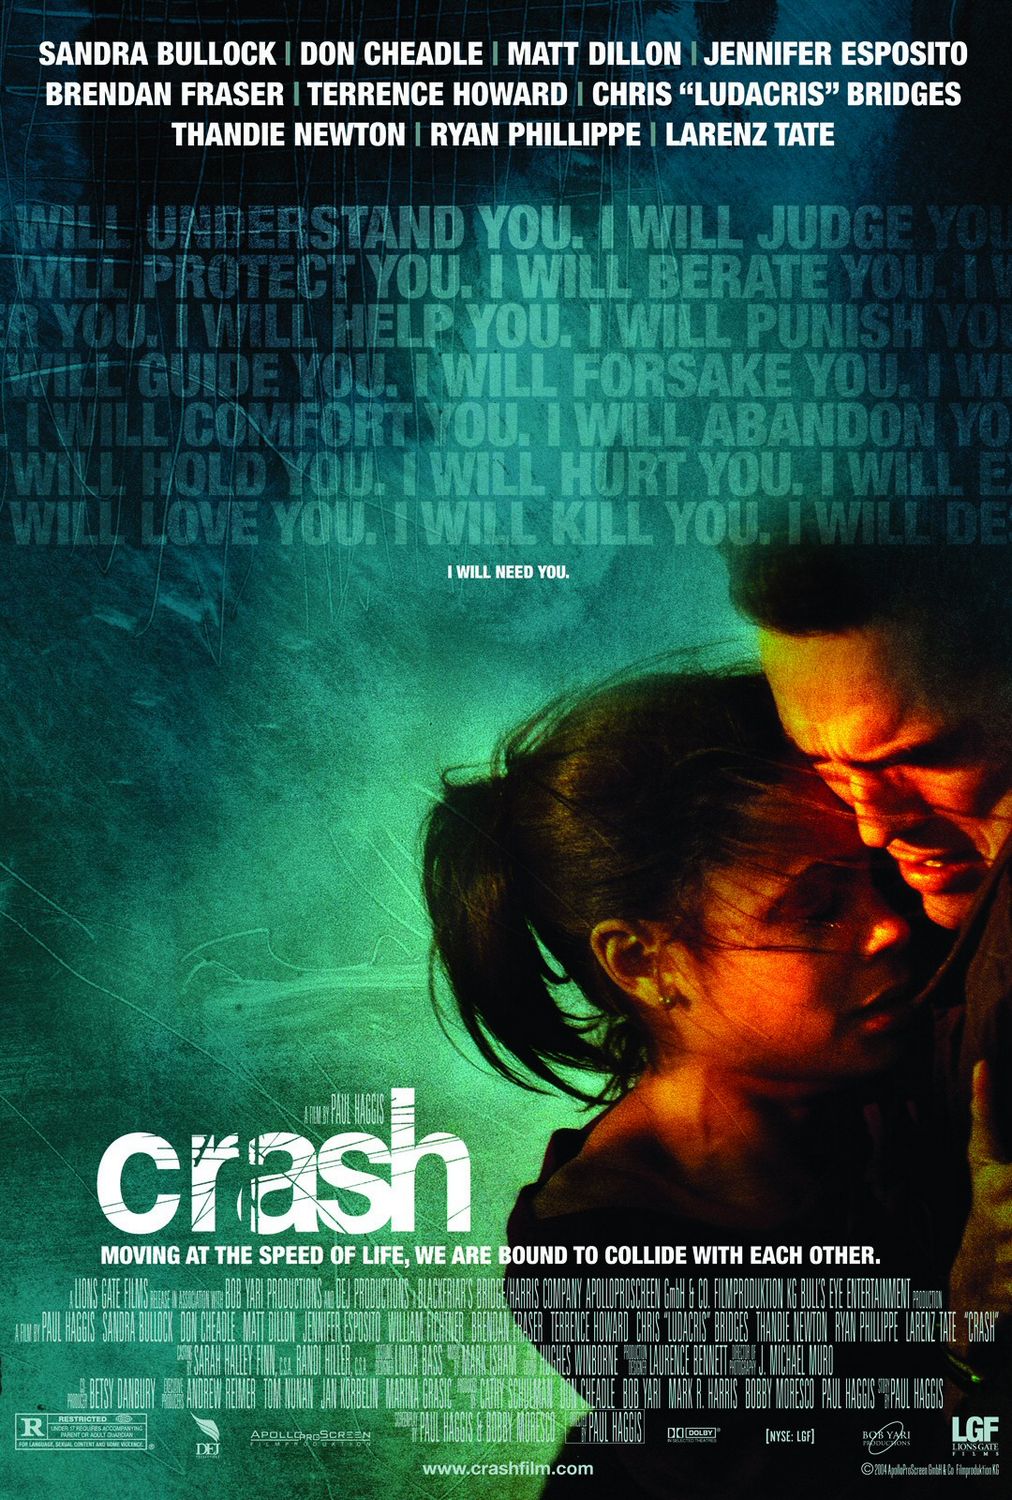 Crash (2004) Movie Trivia - ProProfs Quiz